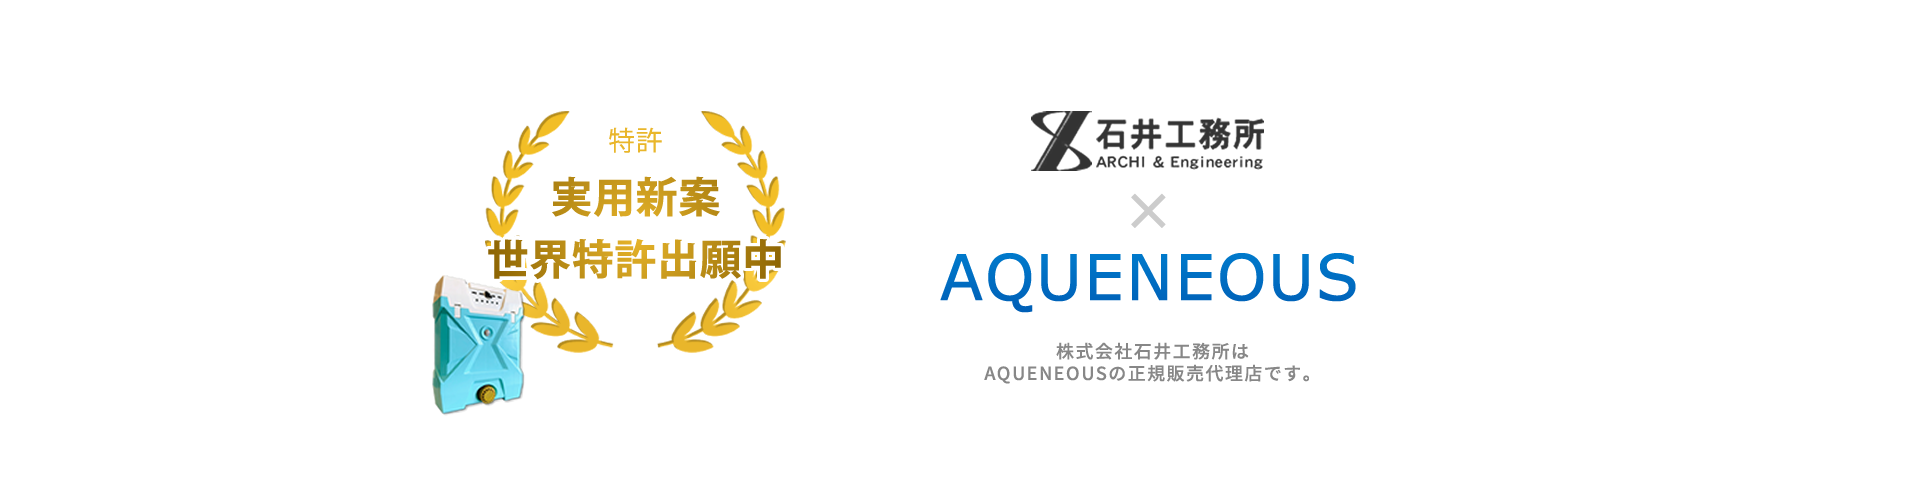 株式会社石井工務所は水発電機AQUENEOUSの正規販売代理店です。安心安全低コスト